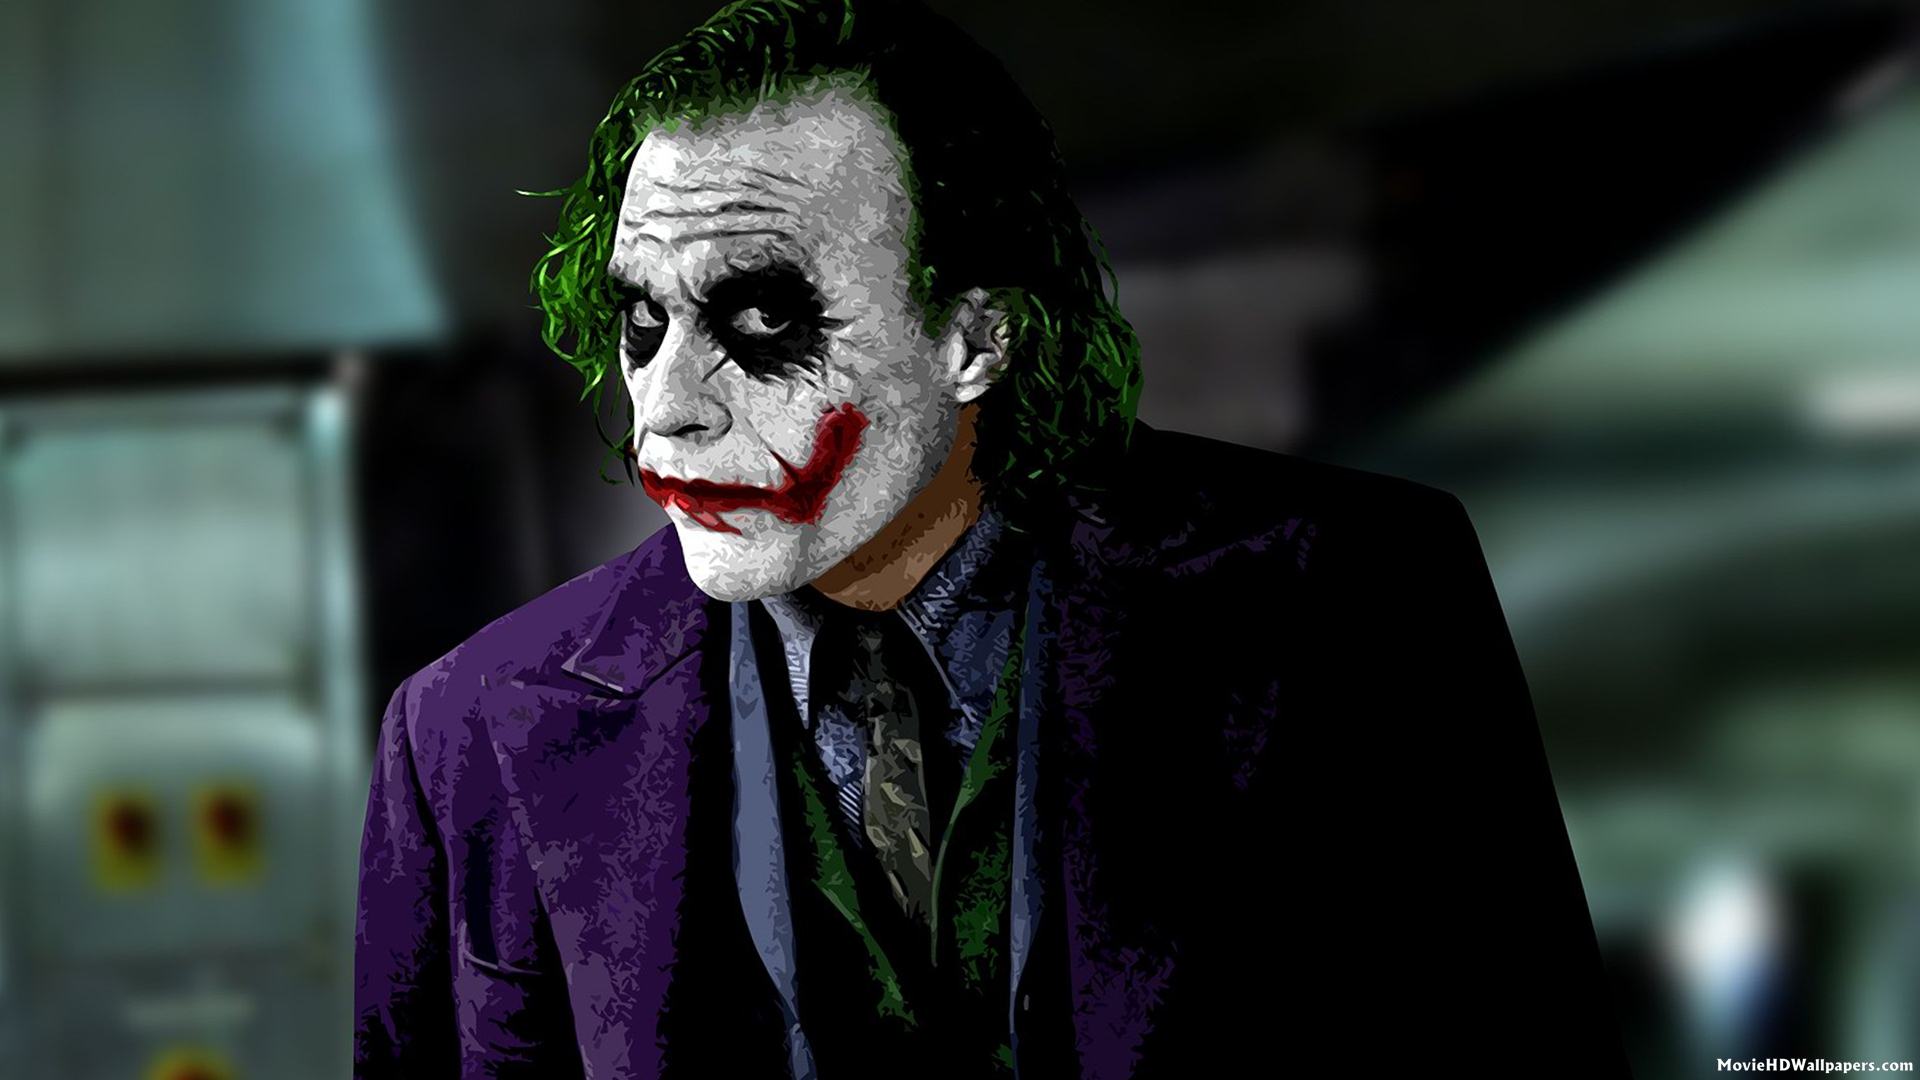 Joker Art in Batman - Movie HD Wallpapers